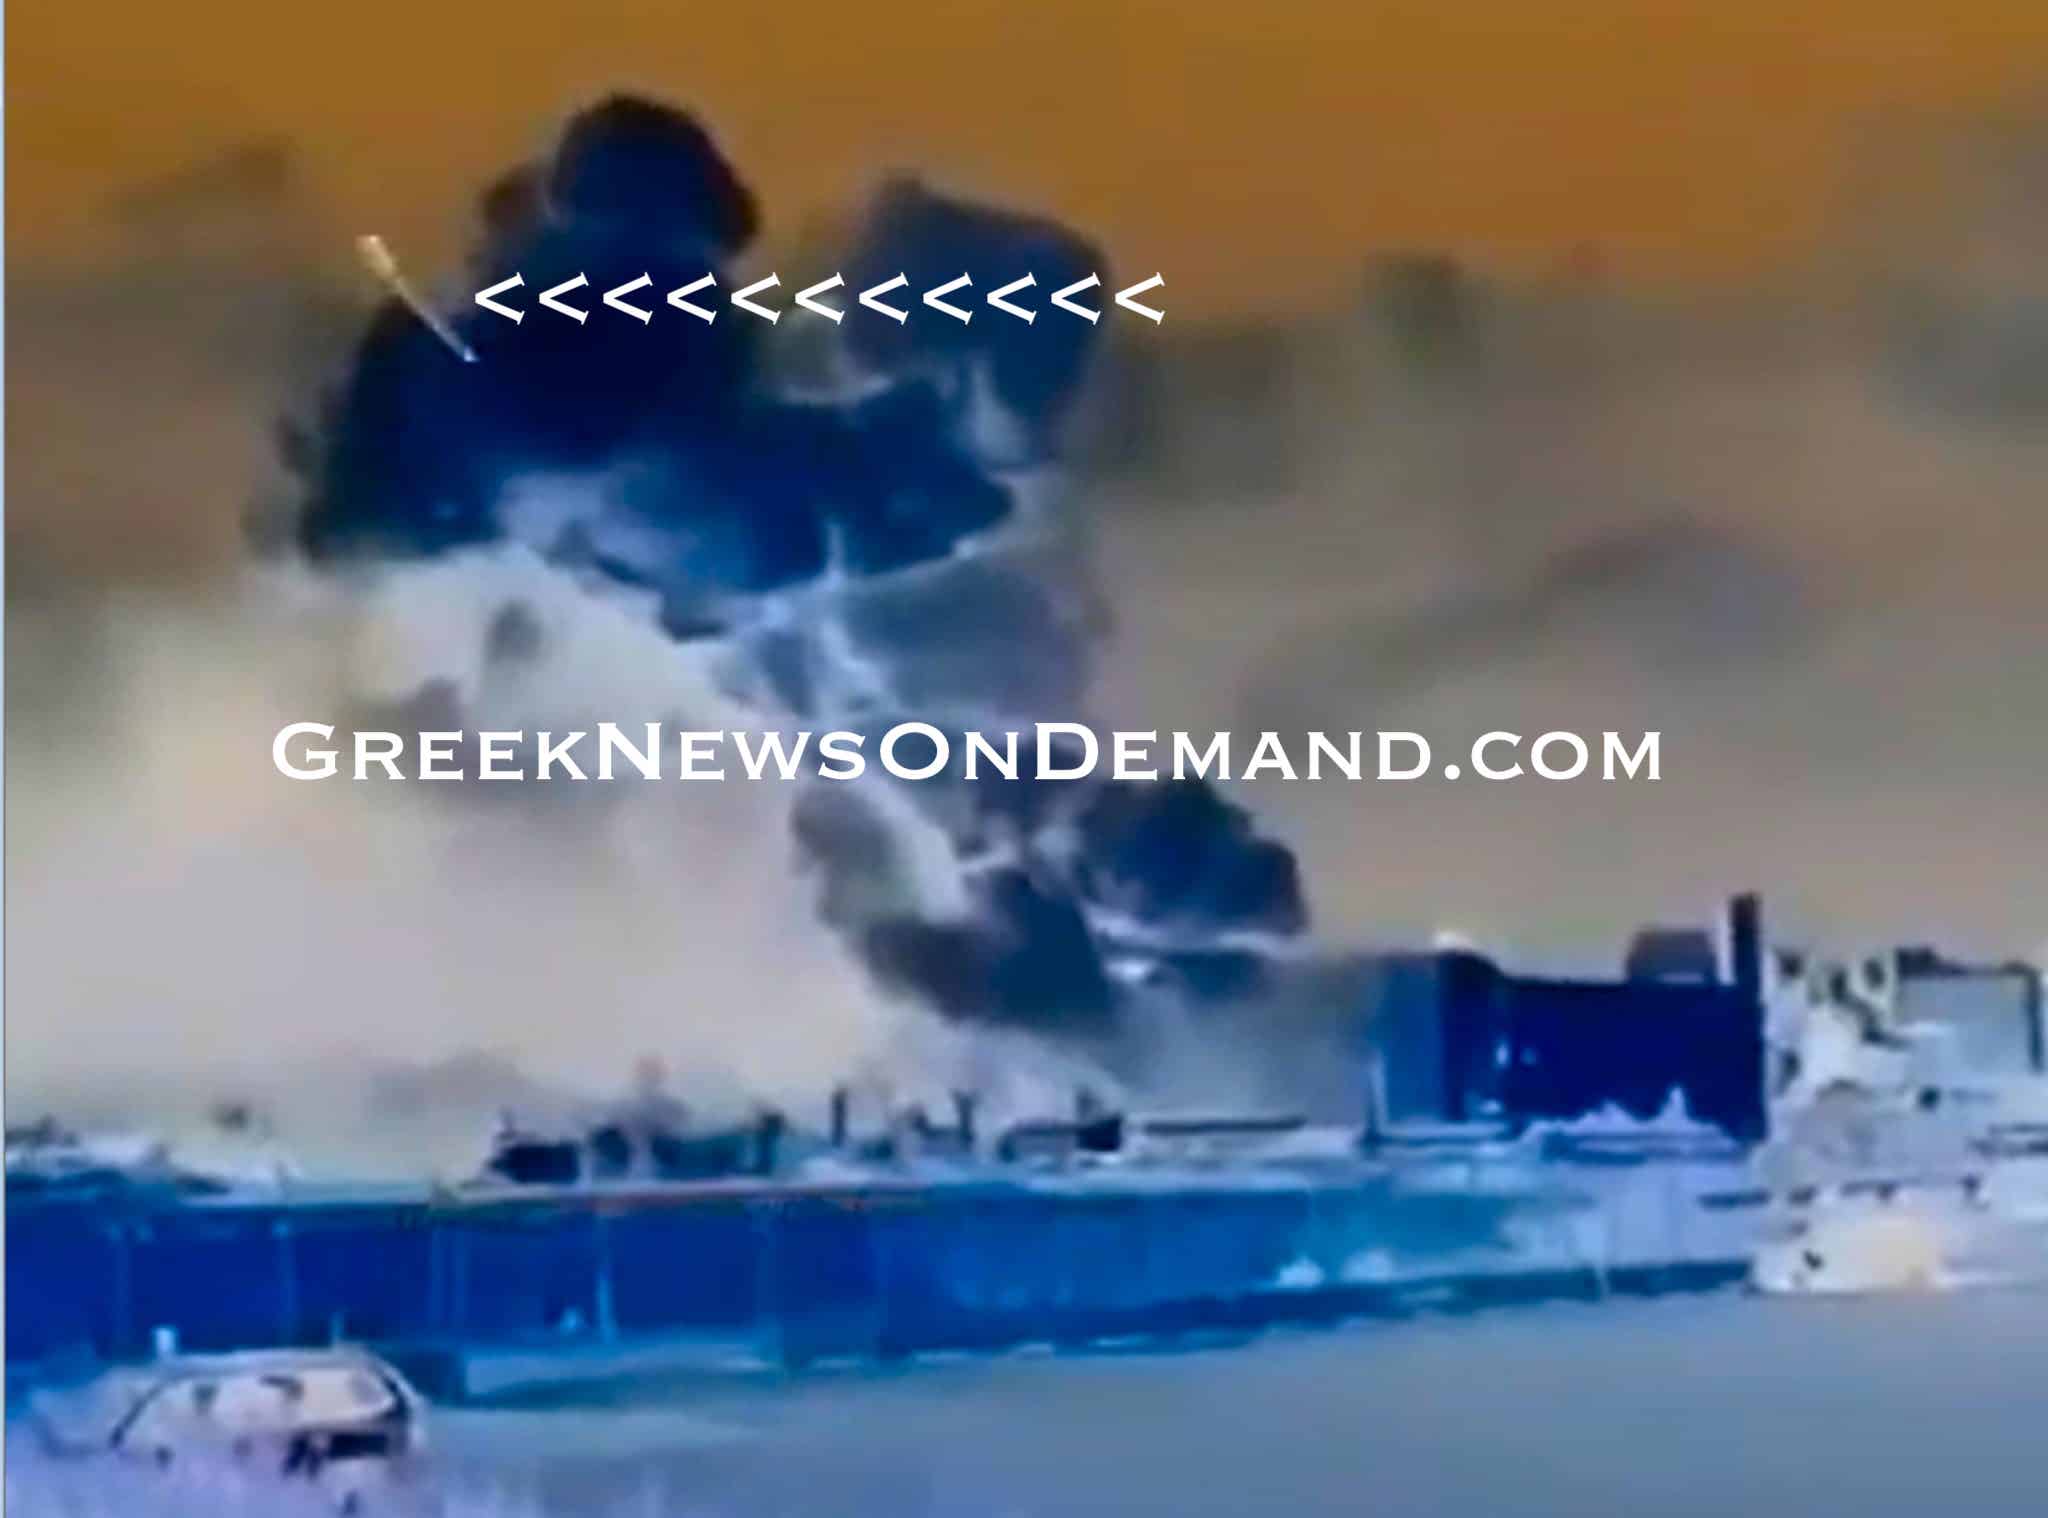 Υπέρυθρο βίντεο αποκαλύπτει λεπτομέρειες του πυρηνικού πυραύλου που έριξε το Ισραήλ κατά Βυρητού!!!